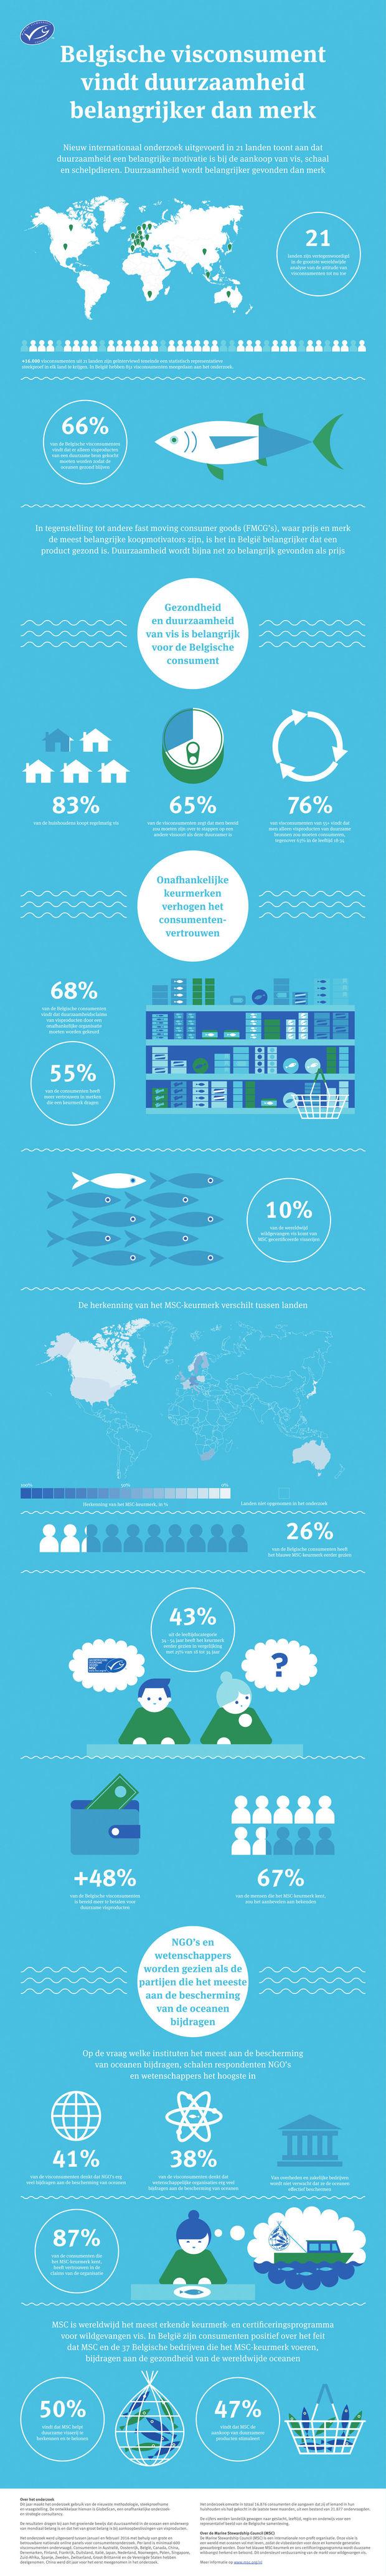 Dit denken Belgen over duurzaam gevangen vis (infographic)